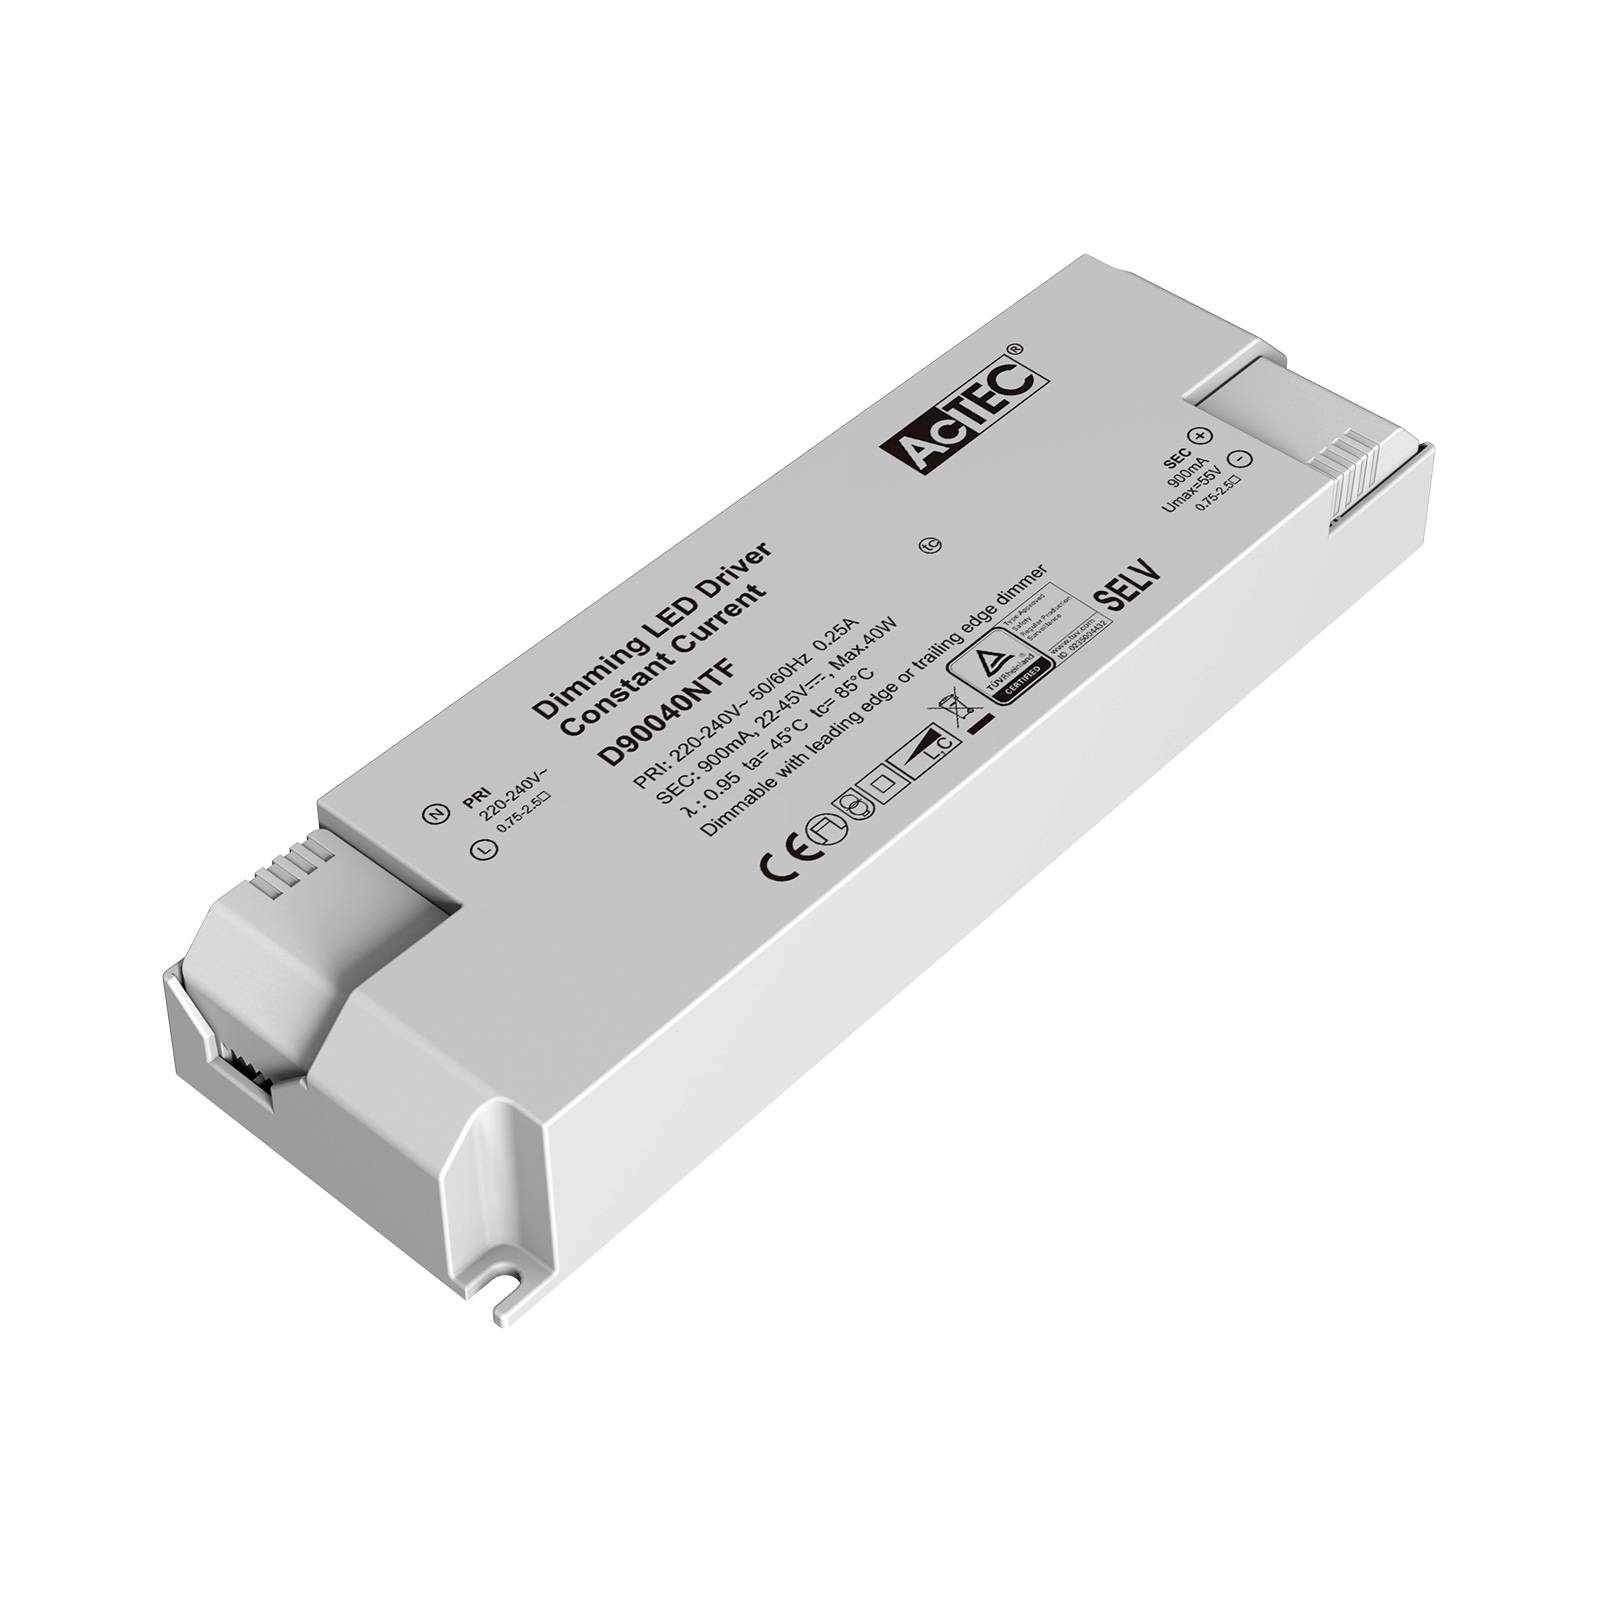 AcTEC Triac LED-Treiber CC max. 40W 900mA von AcTEC